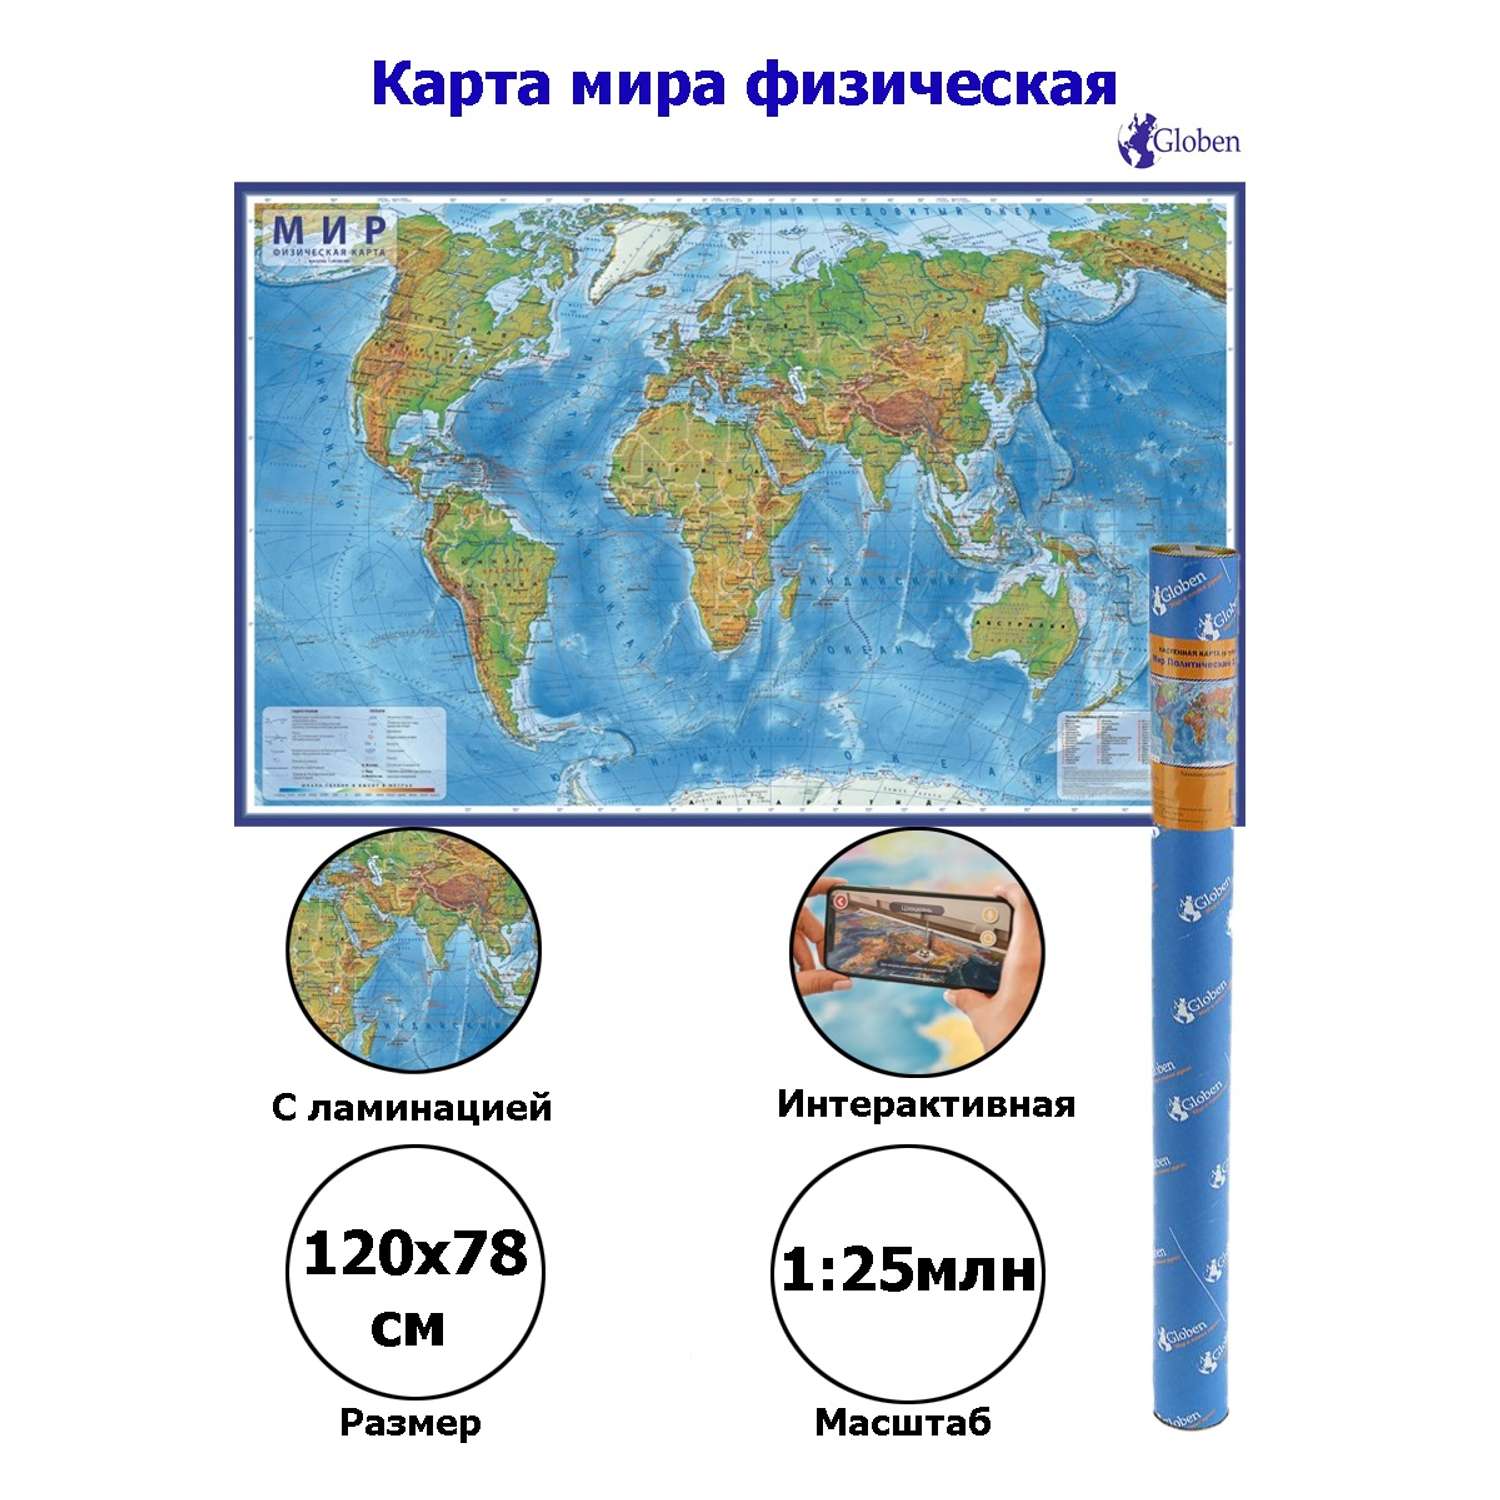 Интерактивная карта Globen Мира физическая с ламинацией 120х78 см - фото 2